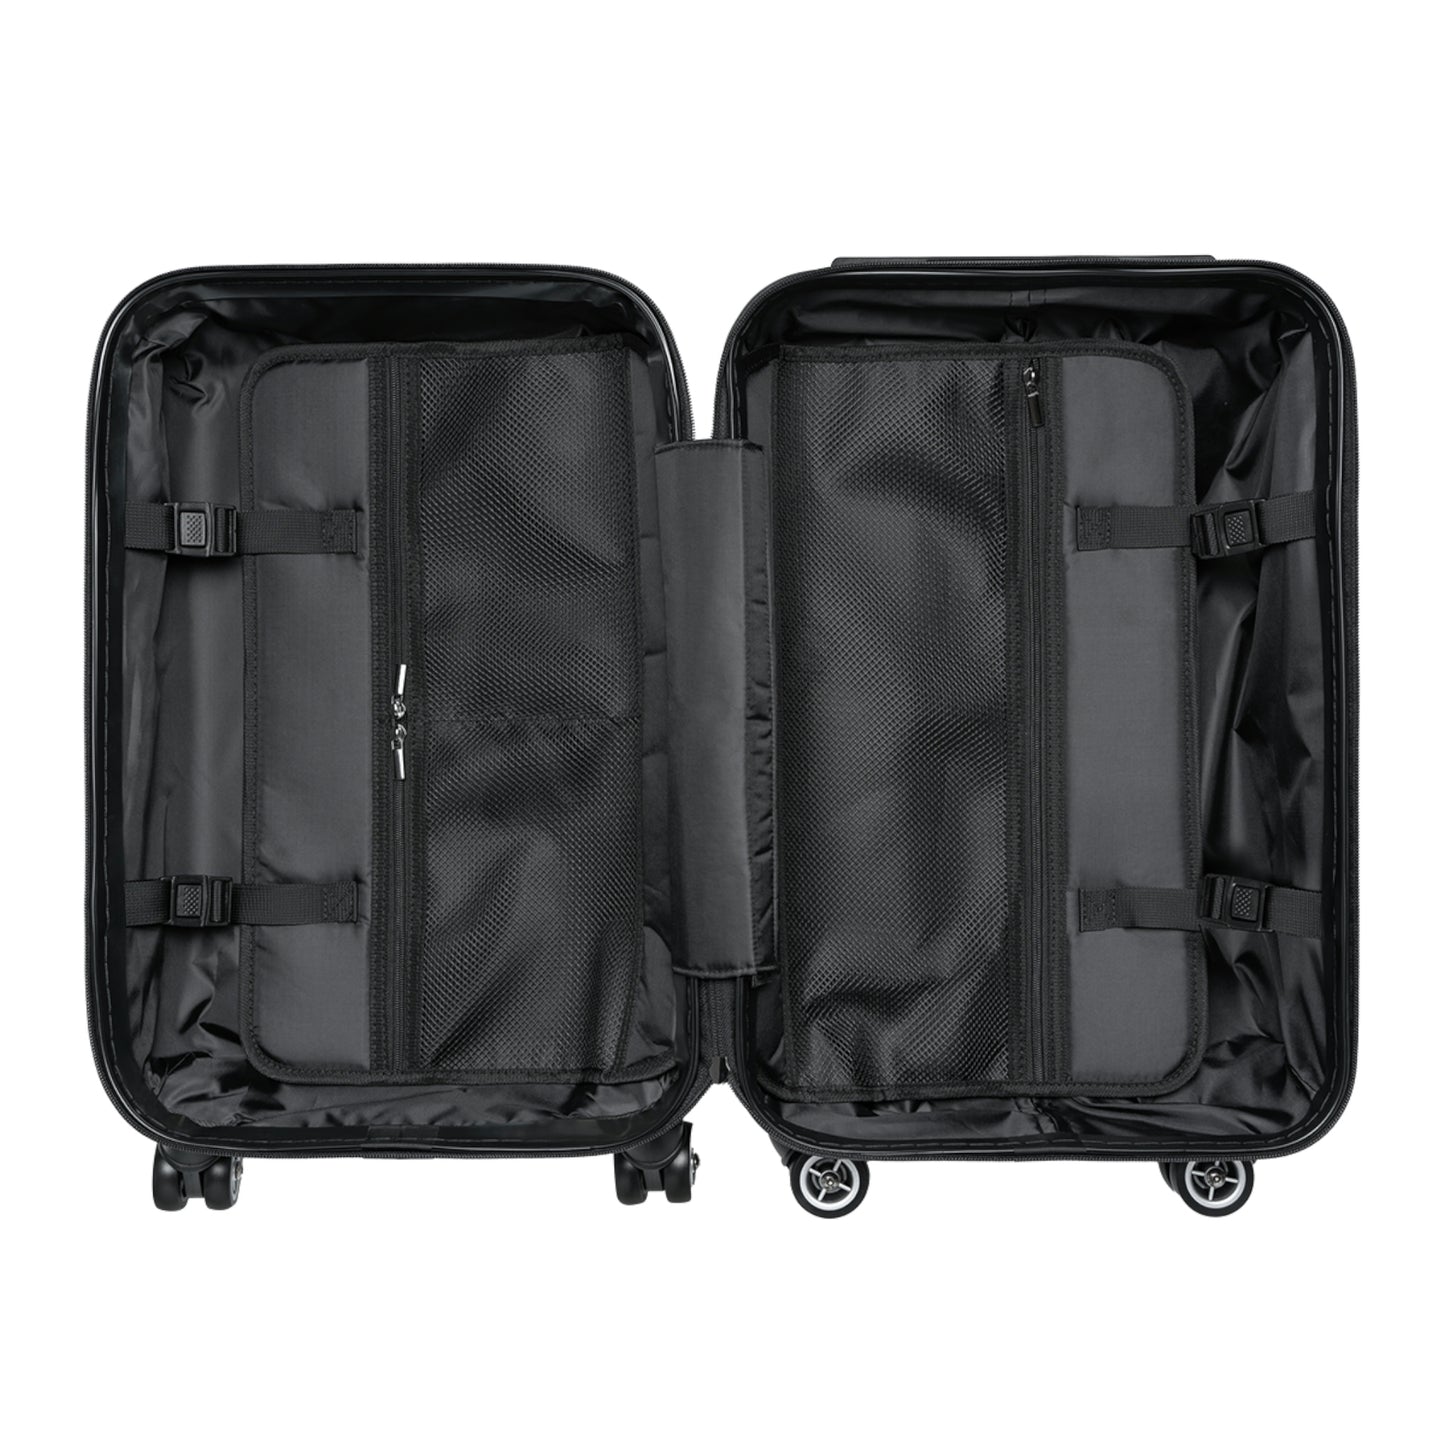 Adorable y caprichosa maleta de mano con diseño de pájaro reyezuelo (tres tamaños disponibles)